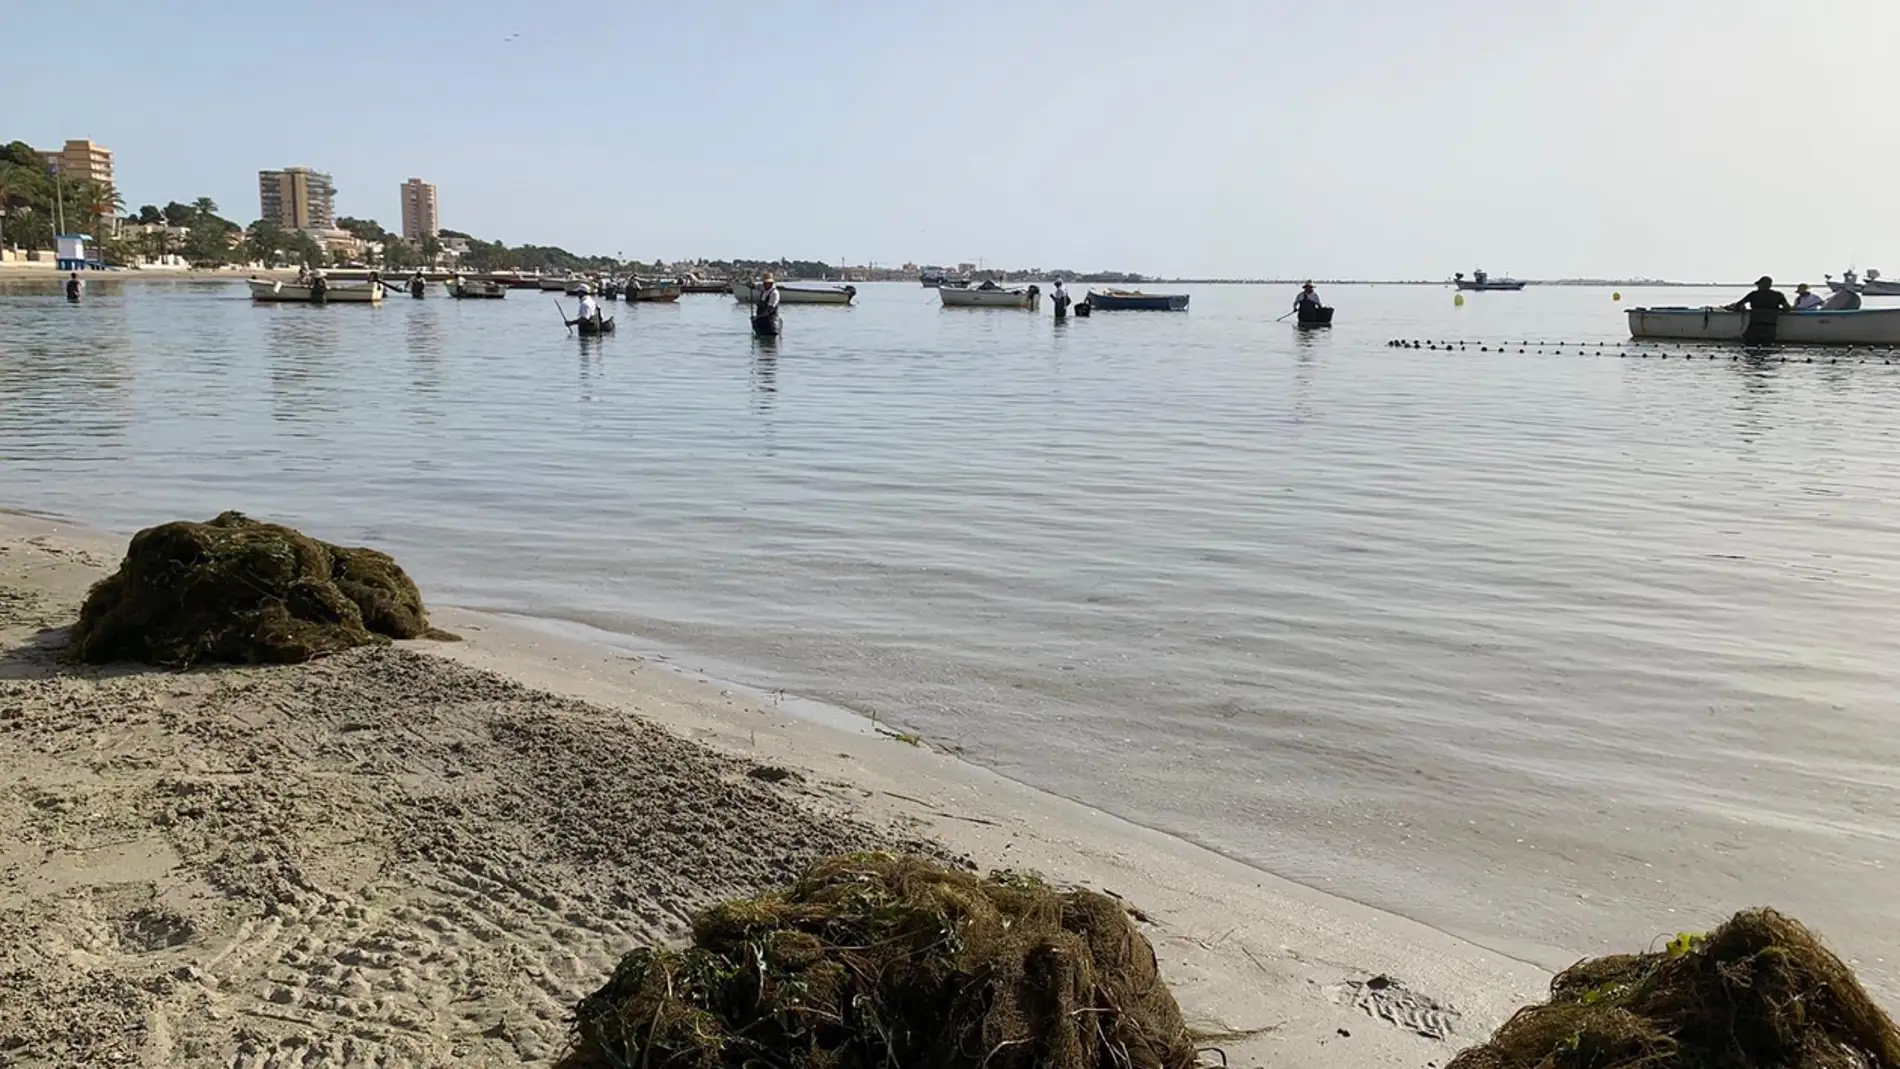 La CARM ha sextuplicado la retirada de biomasa del Mar Menor y evita una "catástrofe", según pescadores y científicos